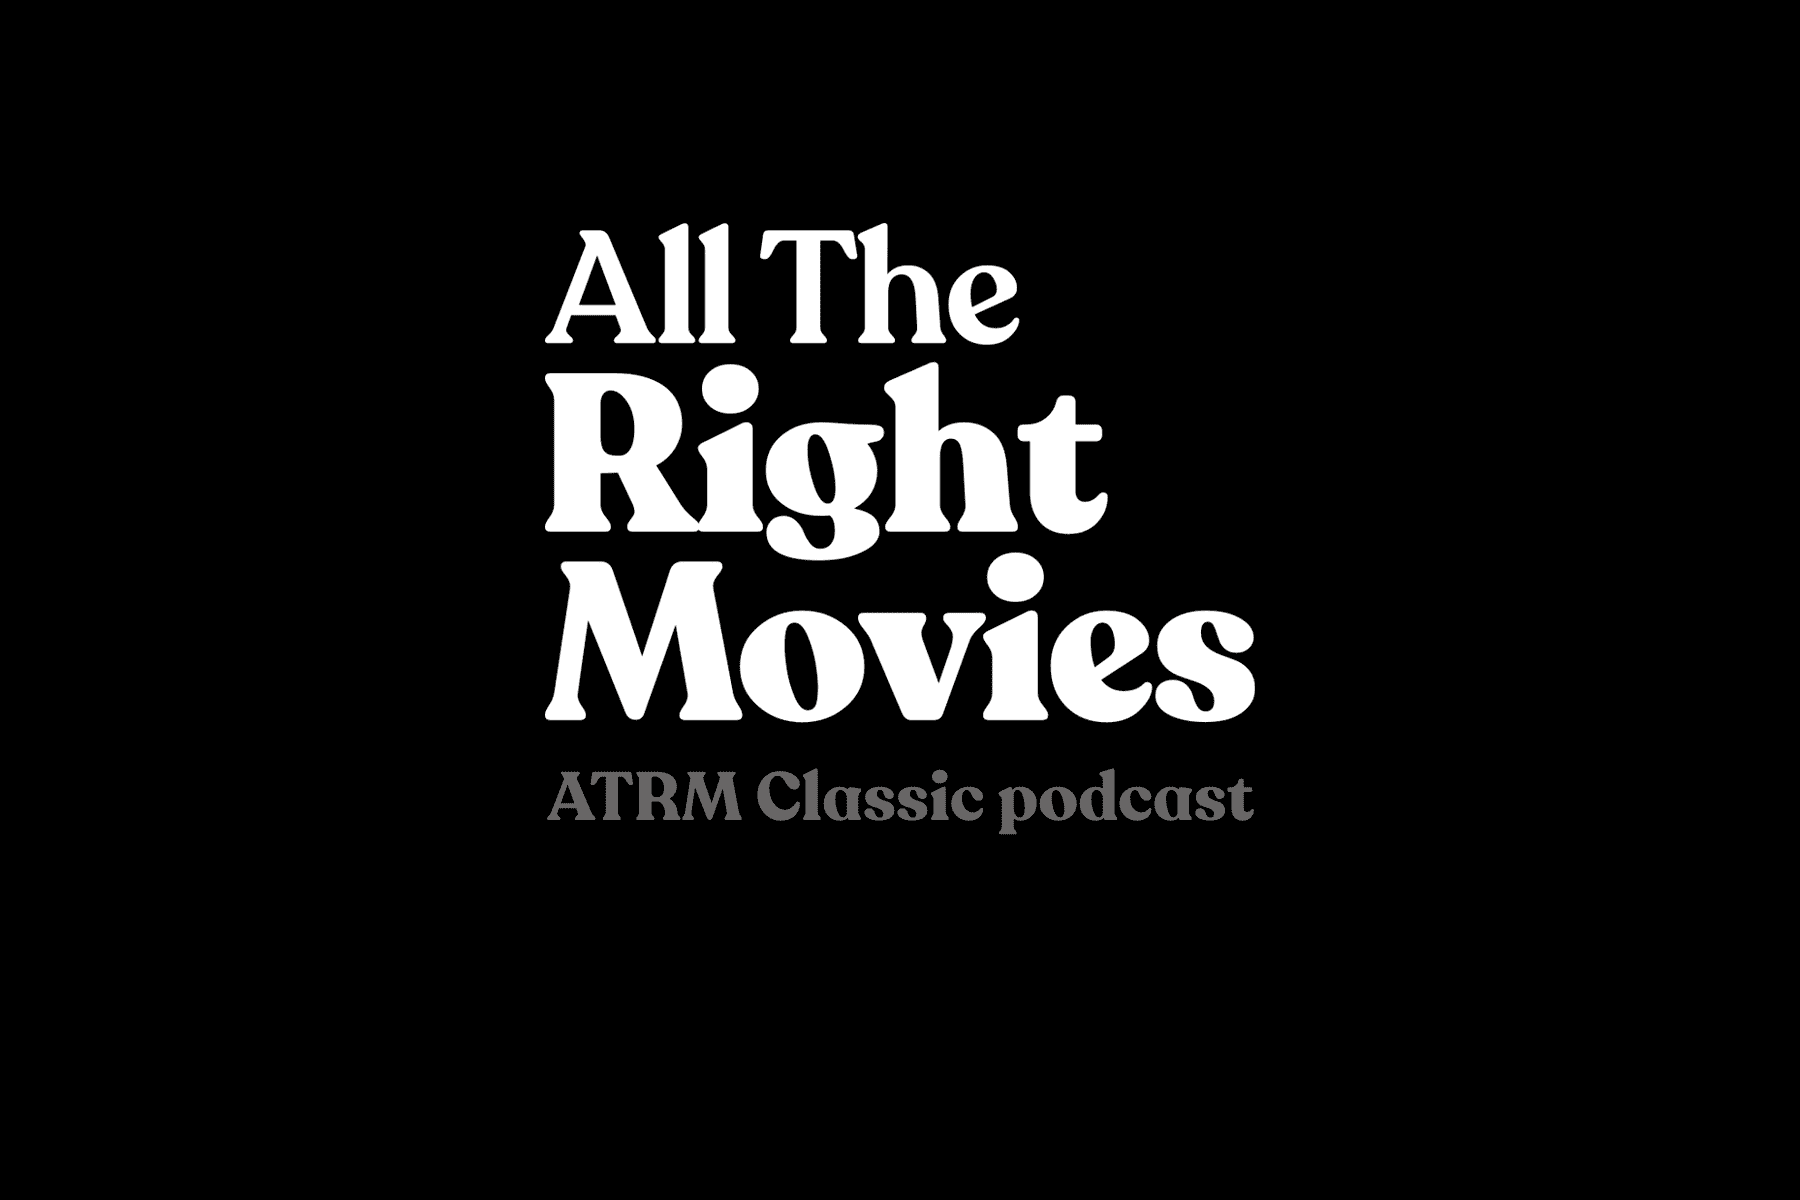 ATRM Classic Movie Podcast